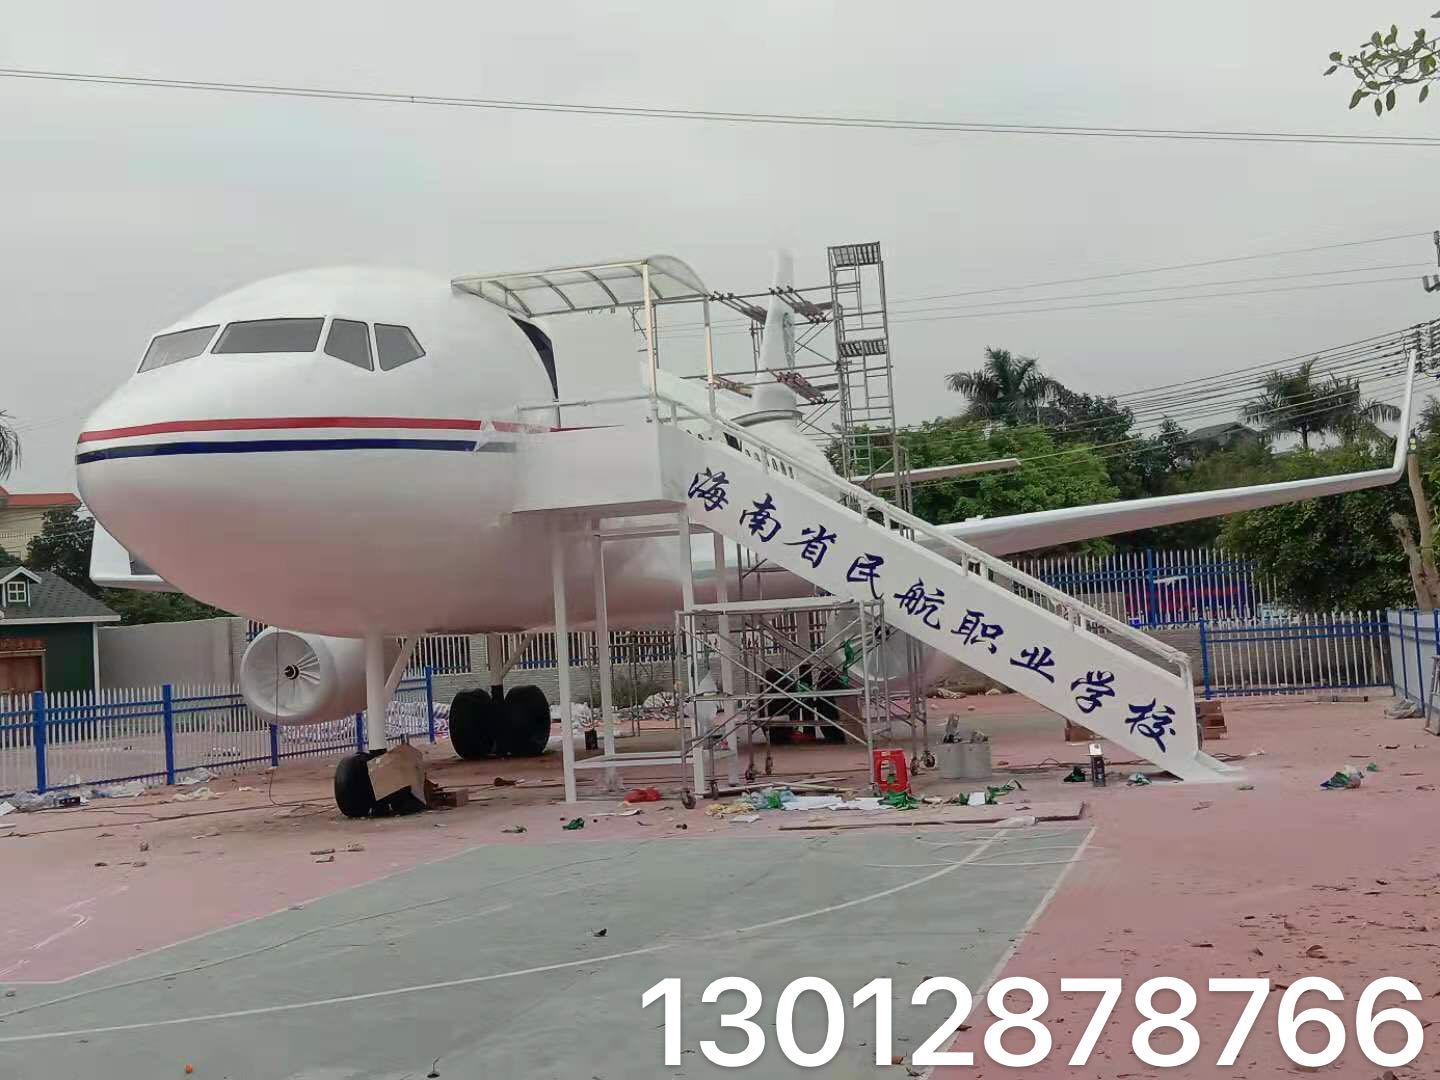 1+X项目必修空乘设备+辅修设备上海城市轨道体验舱价格和谐号金凤凰4